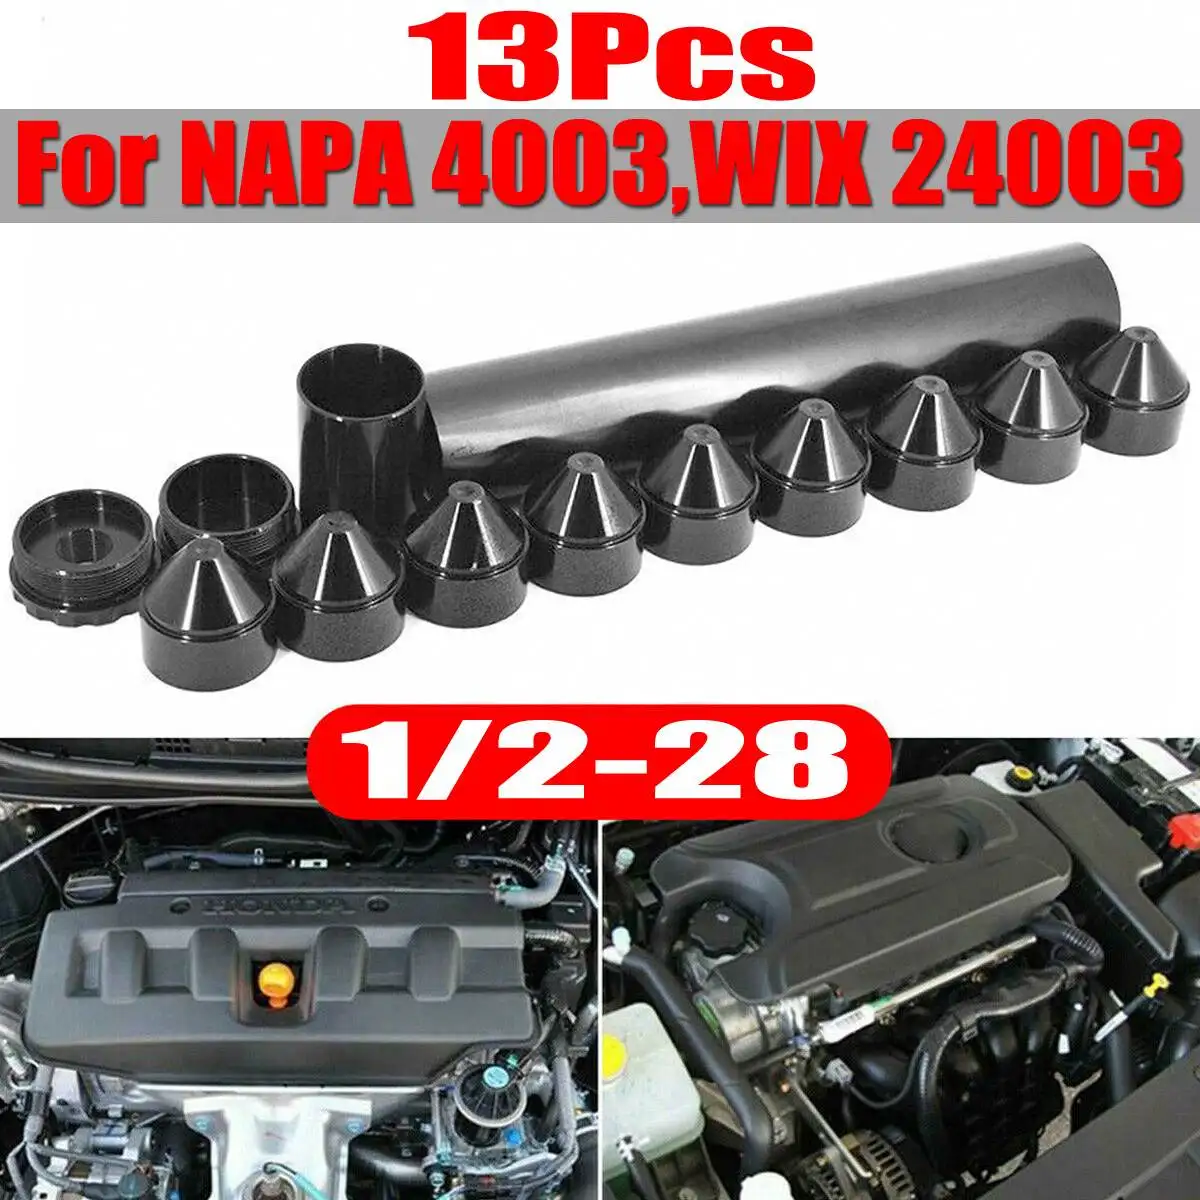 1-3/4x10 для Napa-4003-WIX-24003 автомобильный топливный фильтр для Напа 4003/WIX 24003 1/"-28/5/8"-24 нитей черный Алюминий - Цвет: B